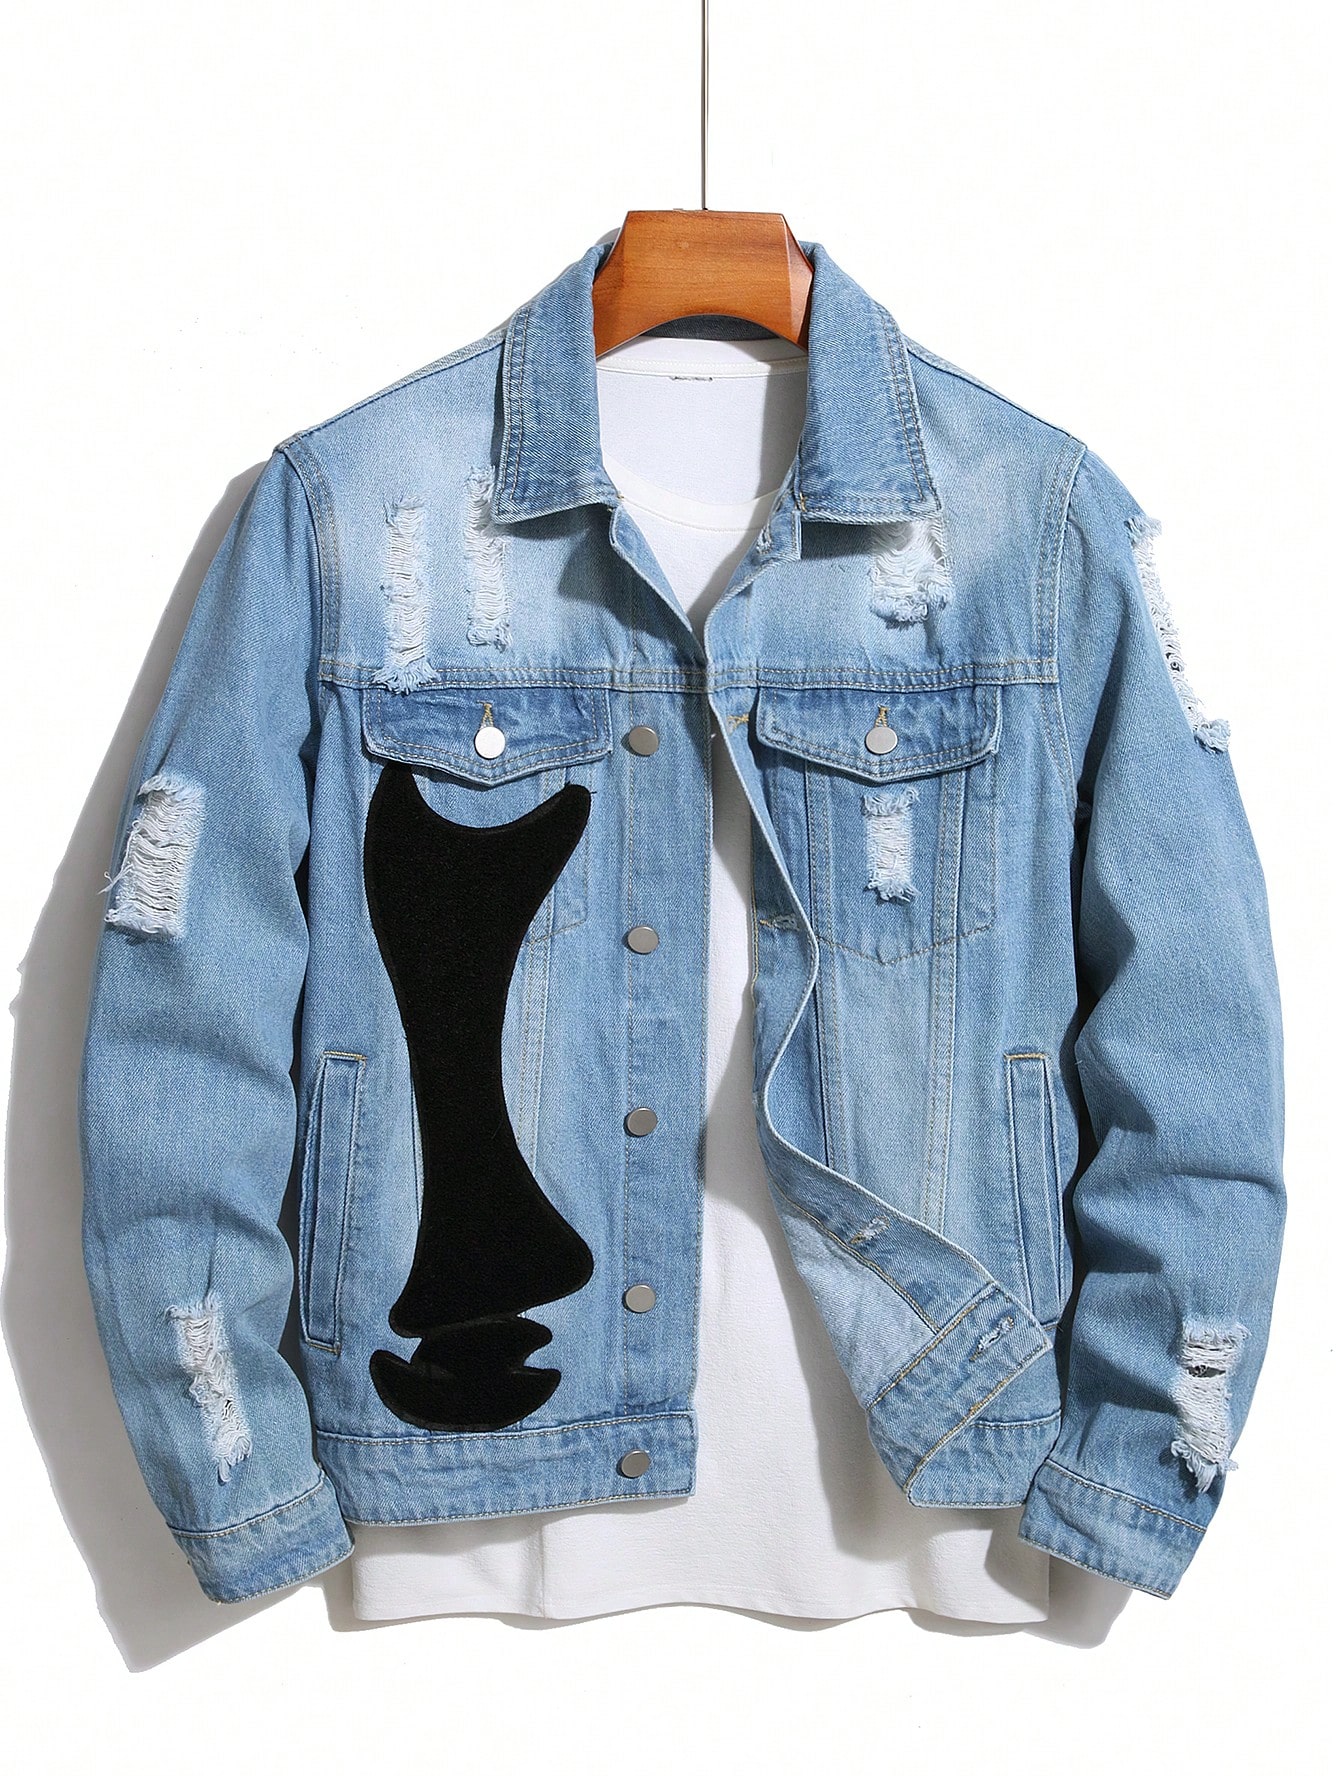 Мужская джинсовая куртка Manfinity EMRG с длинными рукавами и потертыми деталями, легкая стирка мужская джинсовая куртка с вышивкой однотонная однобортная приталенная куртка с отложным воротником и длинными рукавами в стиле хип хоп